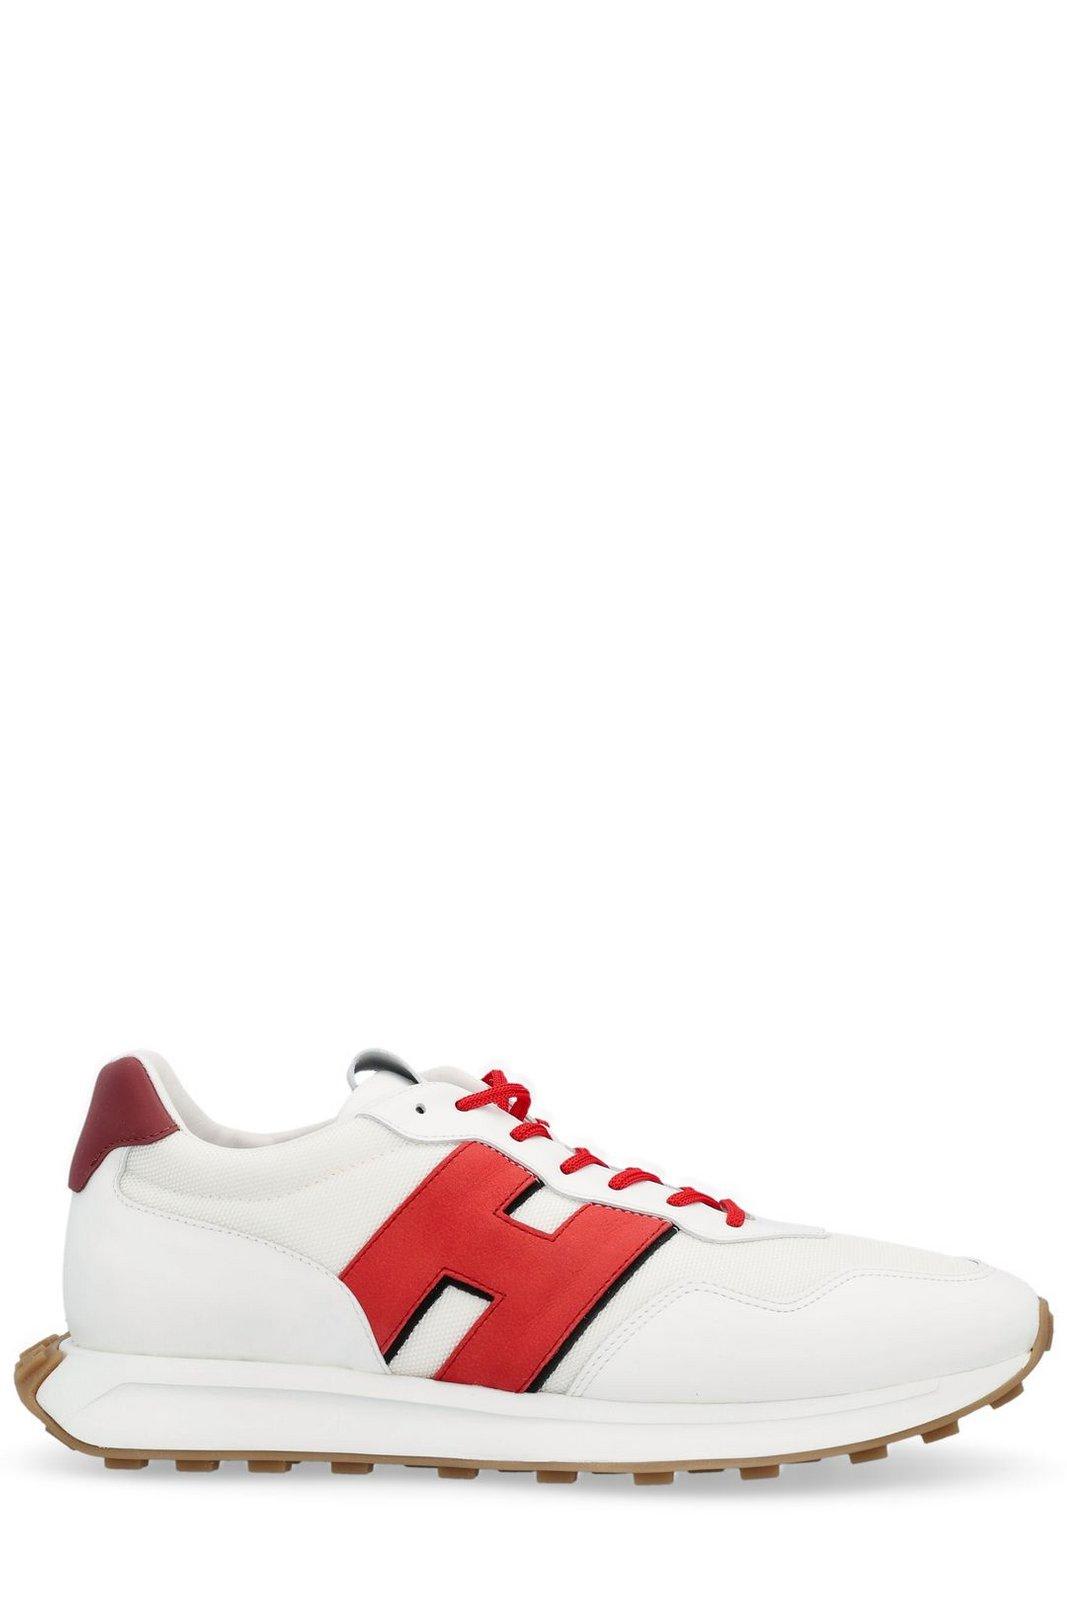 Shop Hogan H601 Lace-up Sneakers